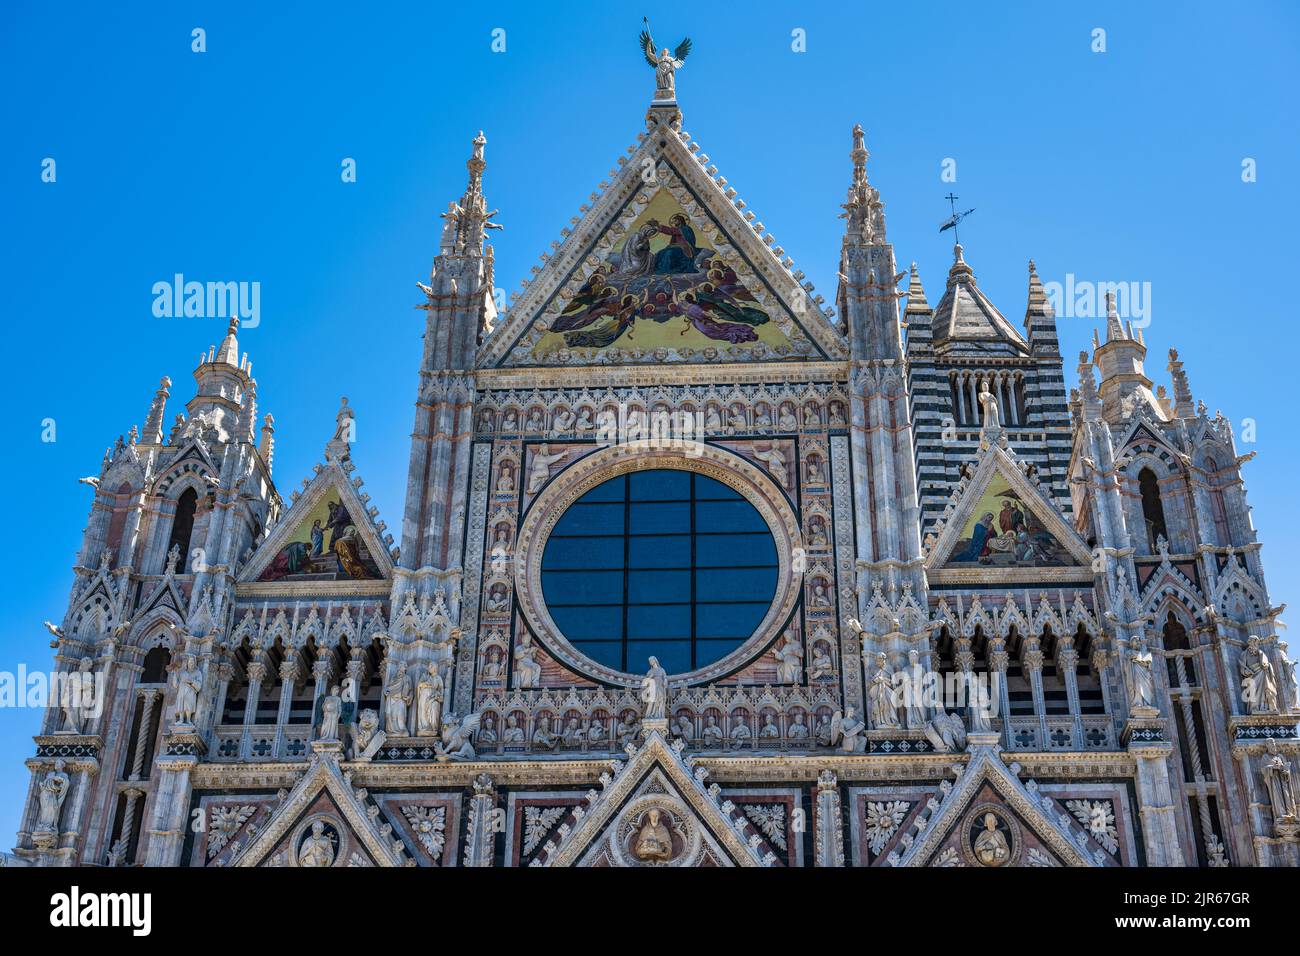 Detalle de la fachada occidental del Duomo di Siena en la Piazza del Duomo en Siena, Toscana, Italia Foto de stock